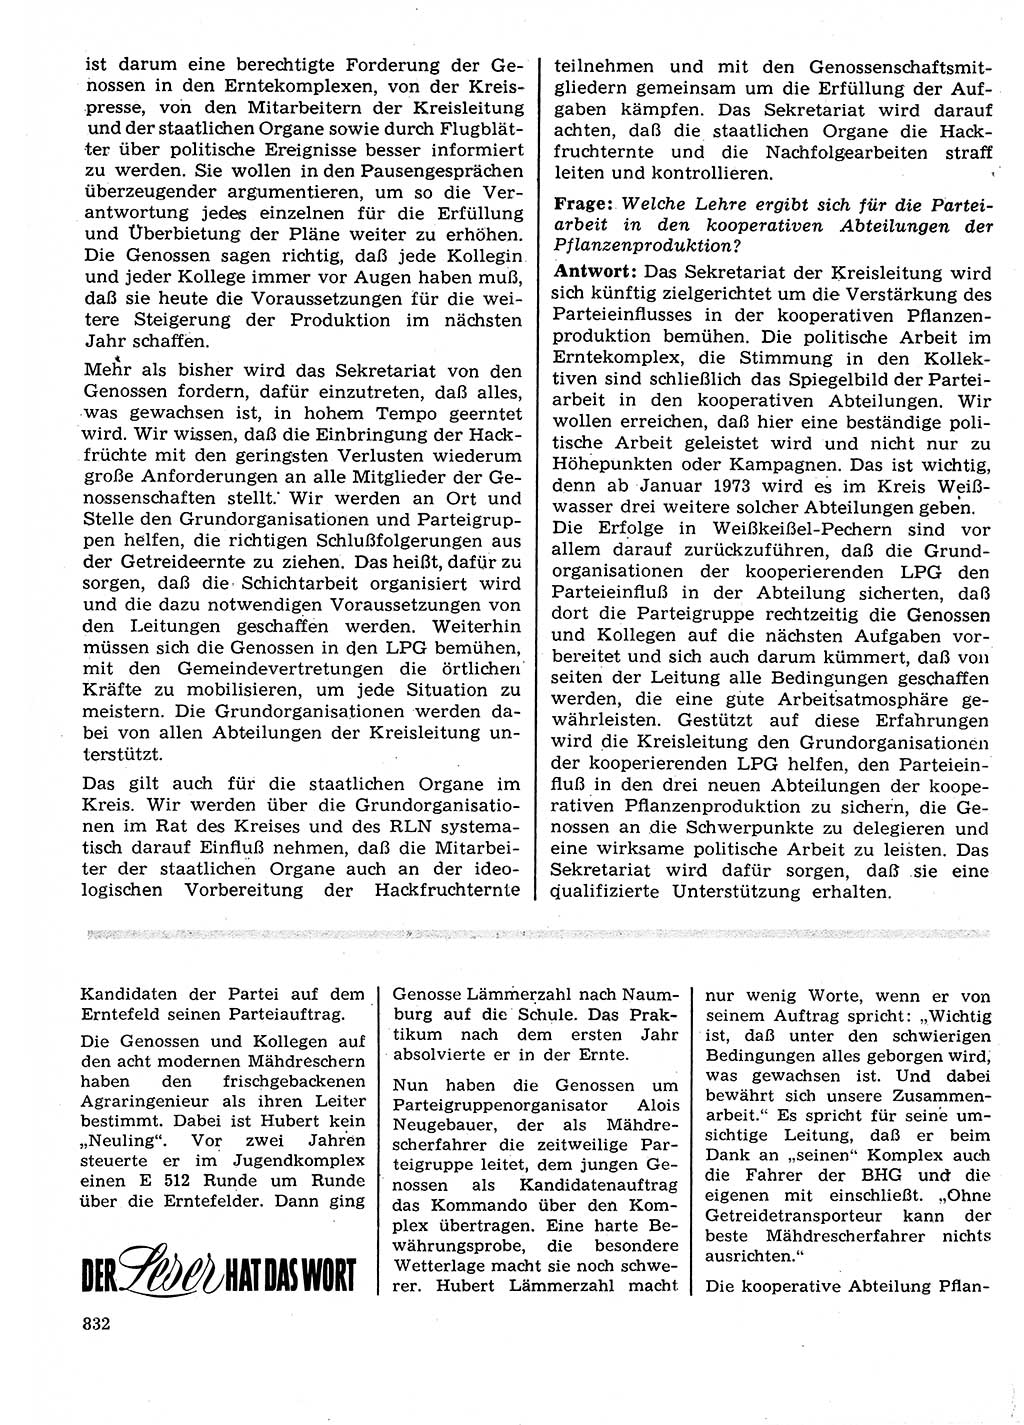 Neuer Weg (NW), Organ des Zentralkomitees (ZK) der SED (Sozialistische Einheitspartei Deutschlands) für Fragen des Parteilebens, 27. Jahrgang [Deutsche Demokratische Republik (DDR)] 1972, Seite 832 (NW ZK SED DDR 1972, S. 832)